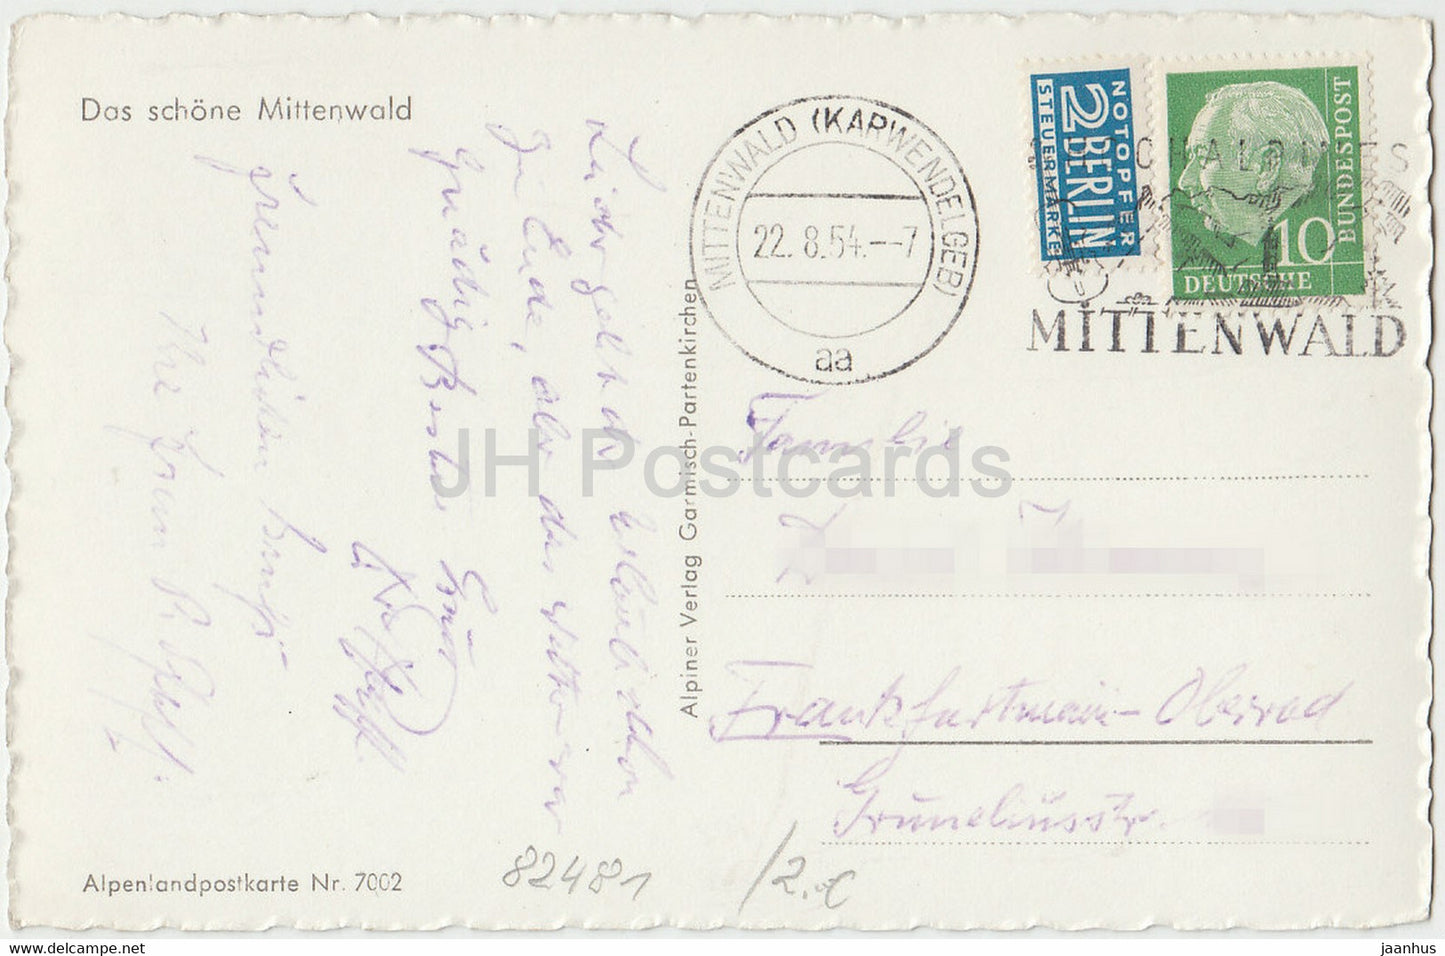 Mittenwald gegen Karwendelgebirge 2476 m - alte Postkarte - 1954 - Deutschland - gebraucht